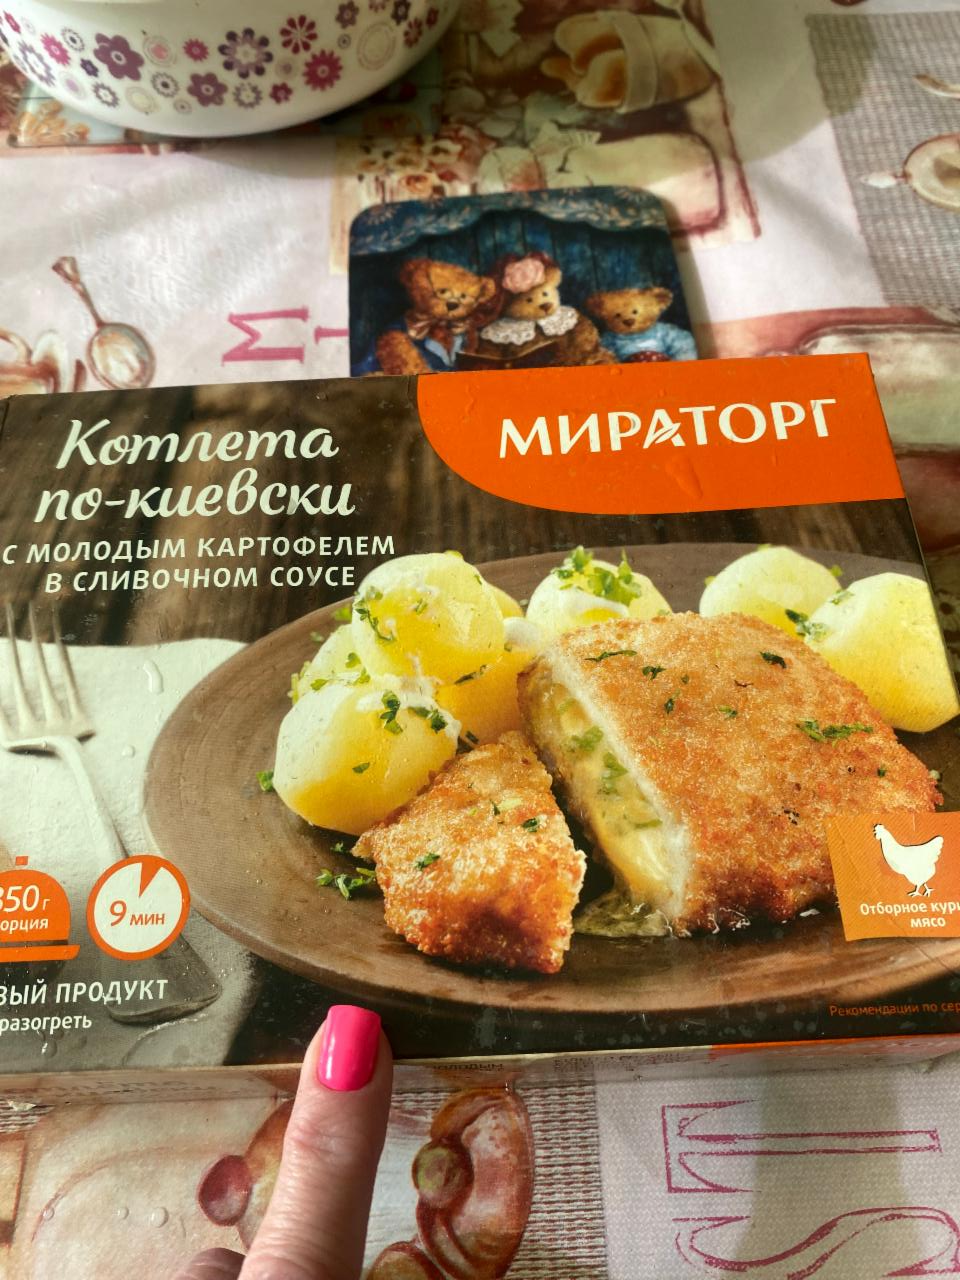 Фото - котлета по-киевски с молодым картофелем в сливочном соусе стратоплан Мираторг